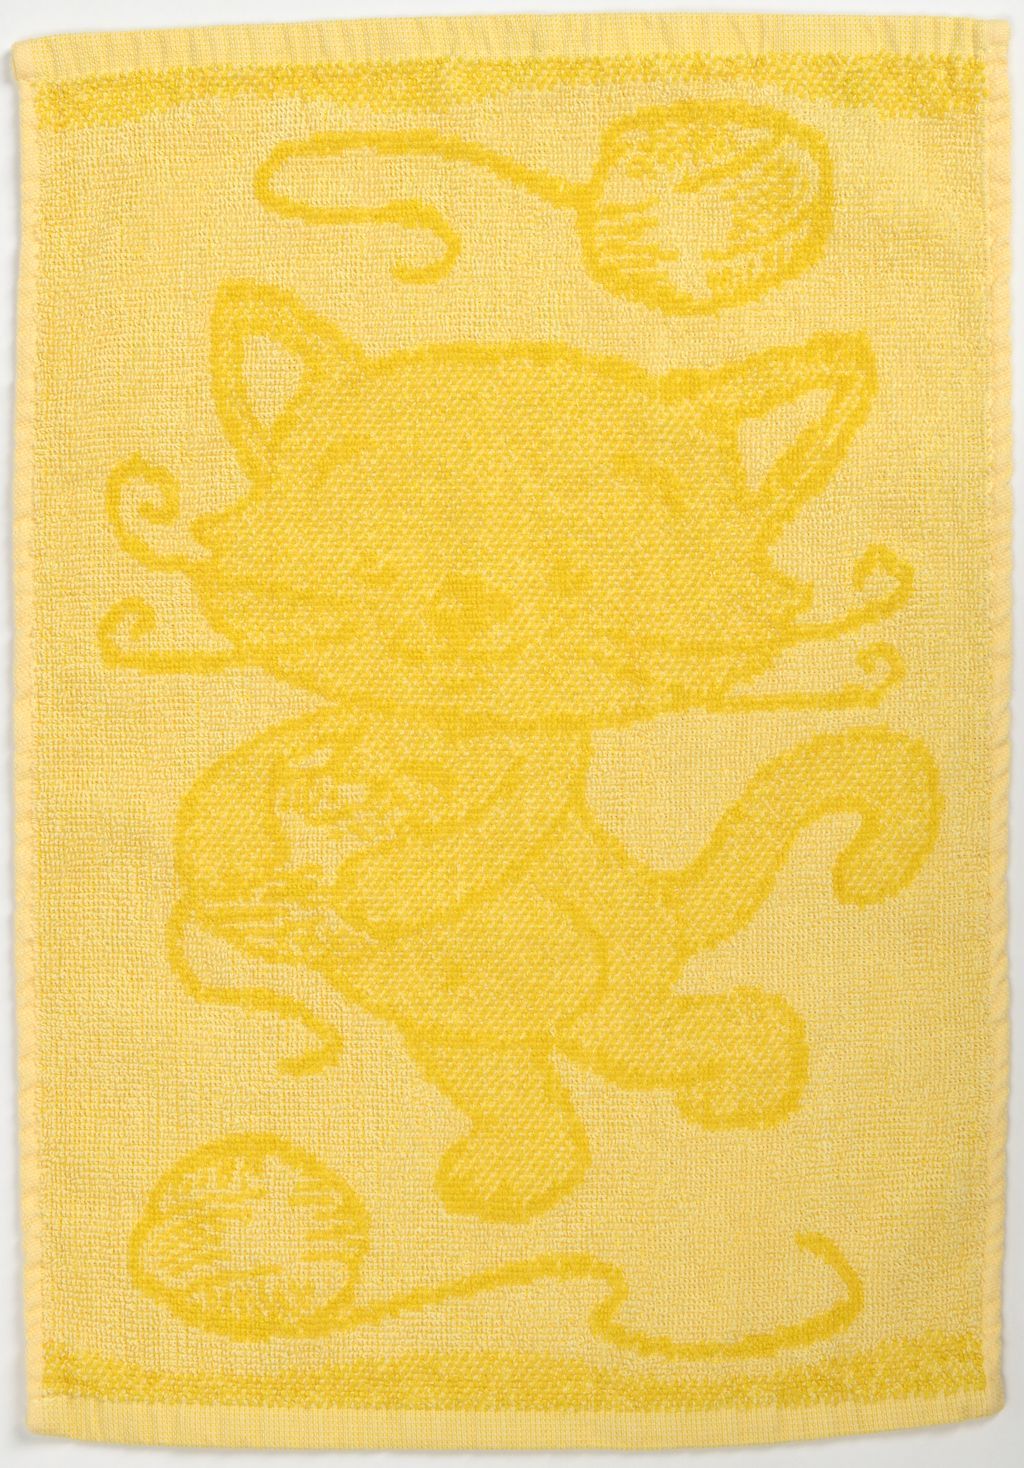 Dětský ručník BEBÉ kočička žlutý 30x50 cm - Výprodej Povlečení